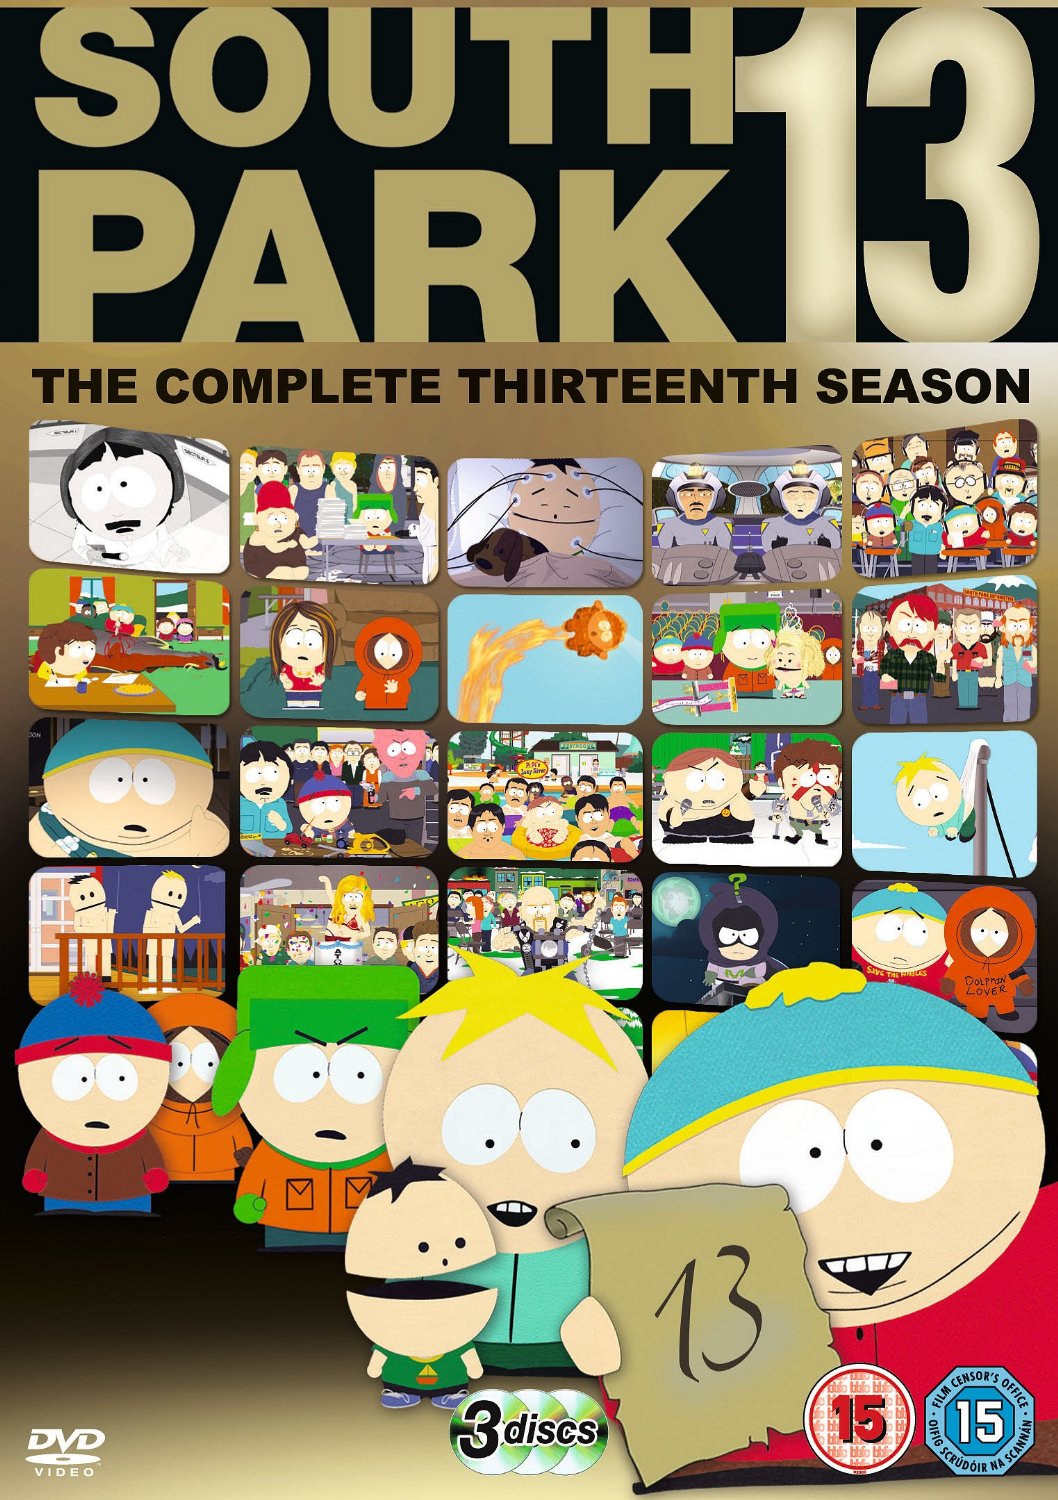 South Park Season 13 Review